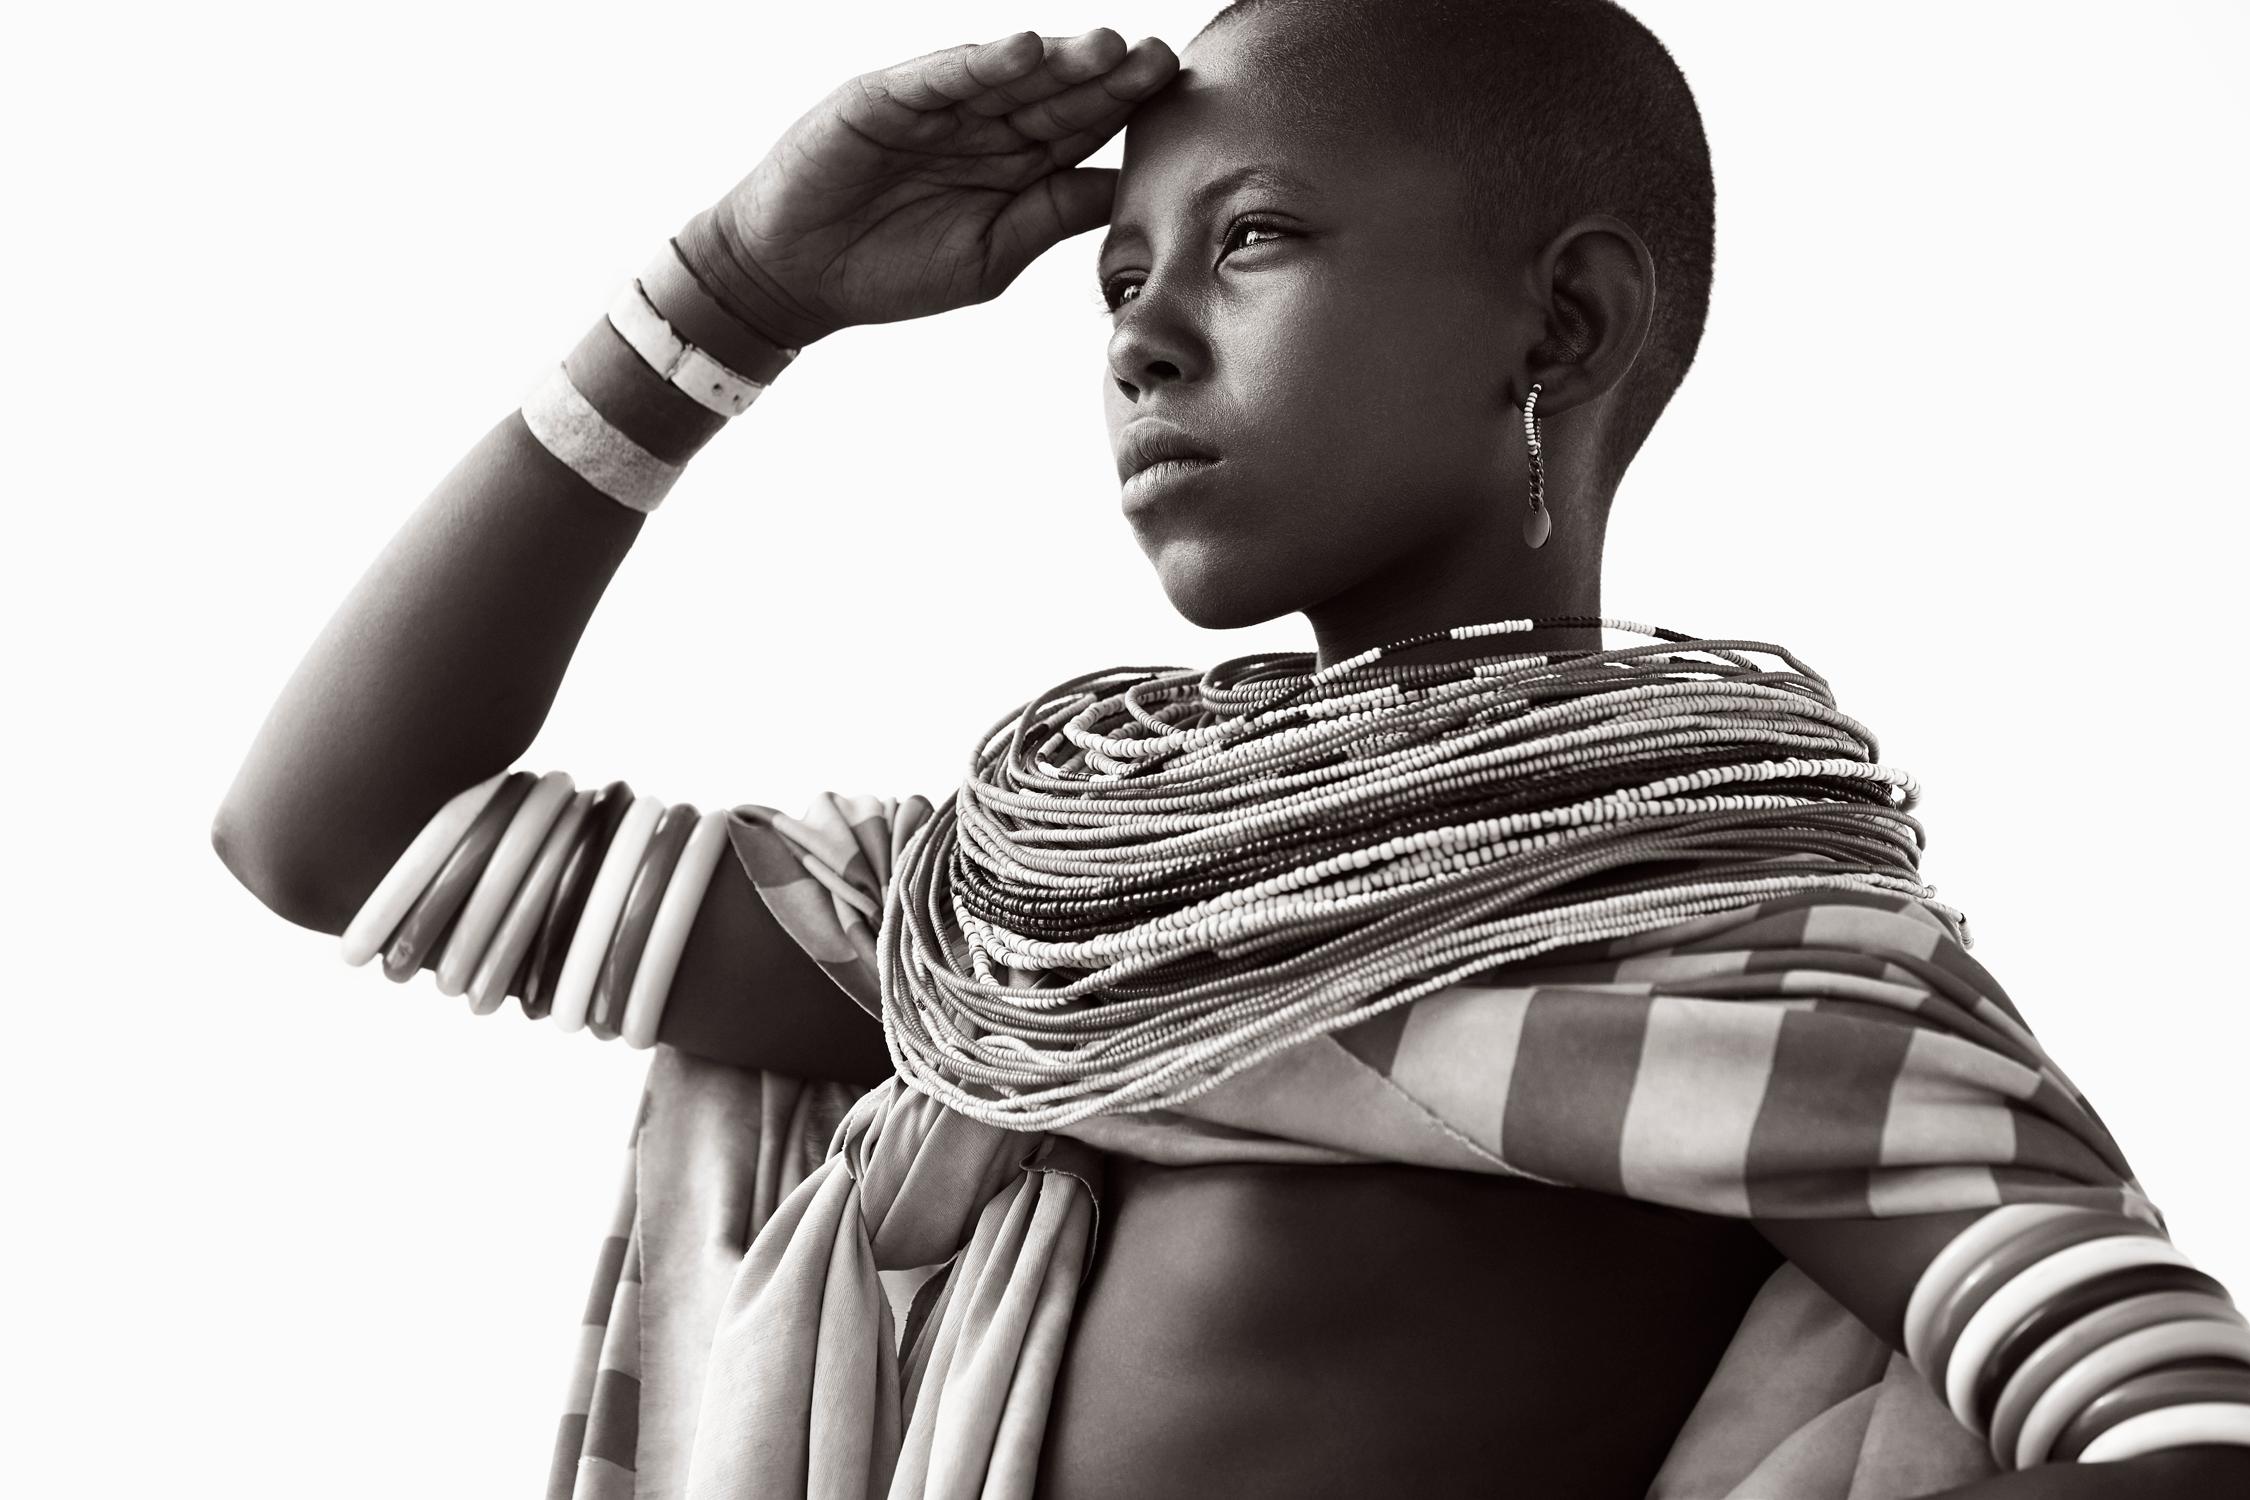 Drew Doggett Black and White Photograph – Eine junge Frau blickt über die nördlich von Kenia stammende Wüste, ihr Vorfahren